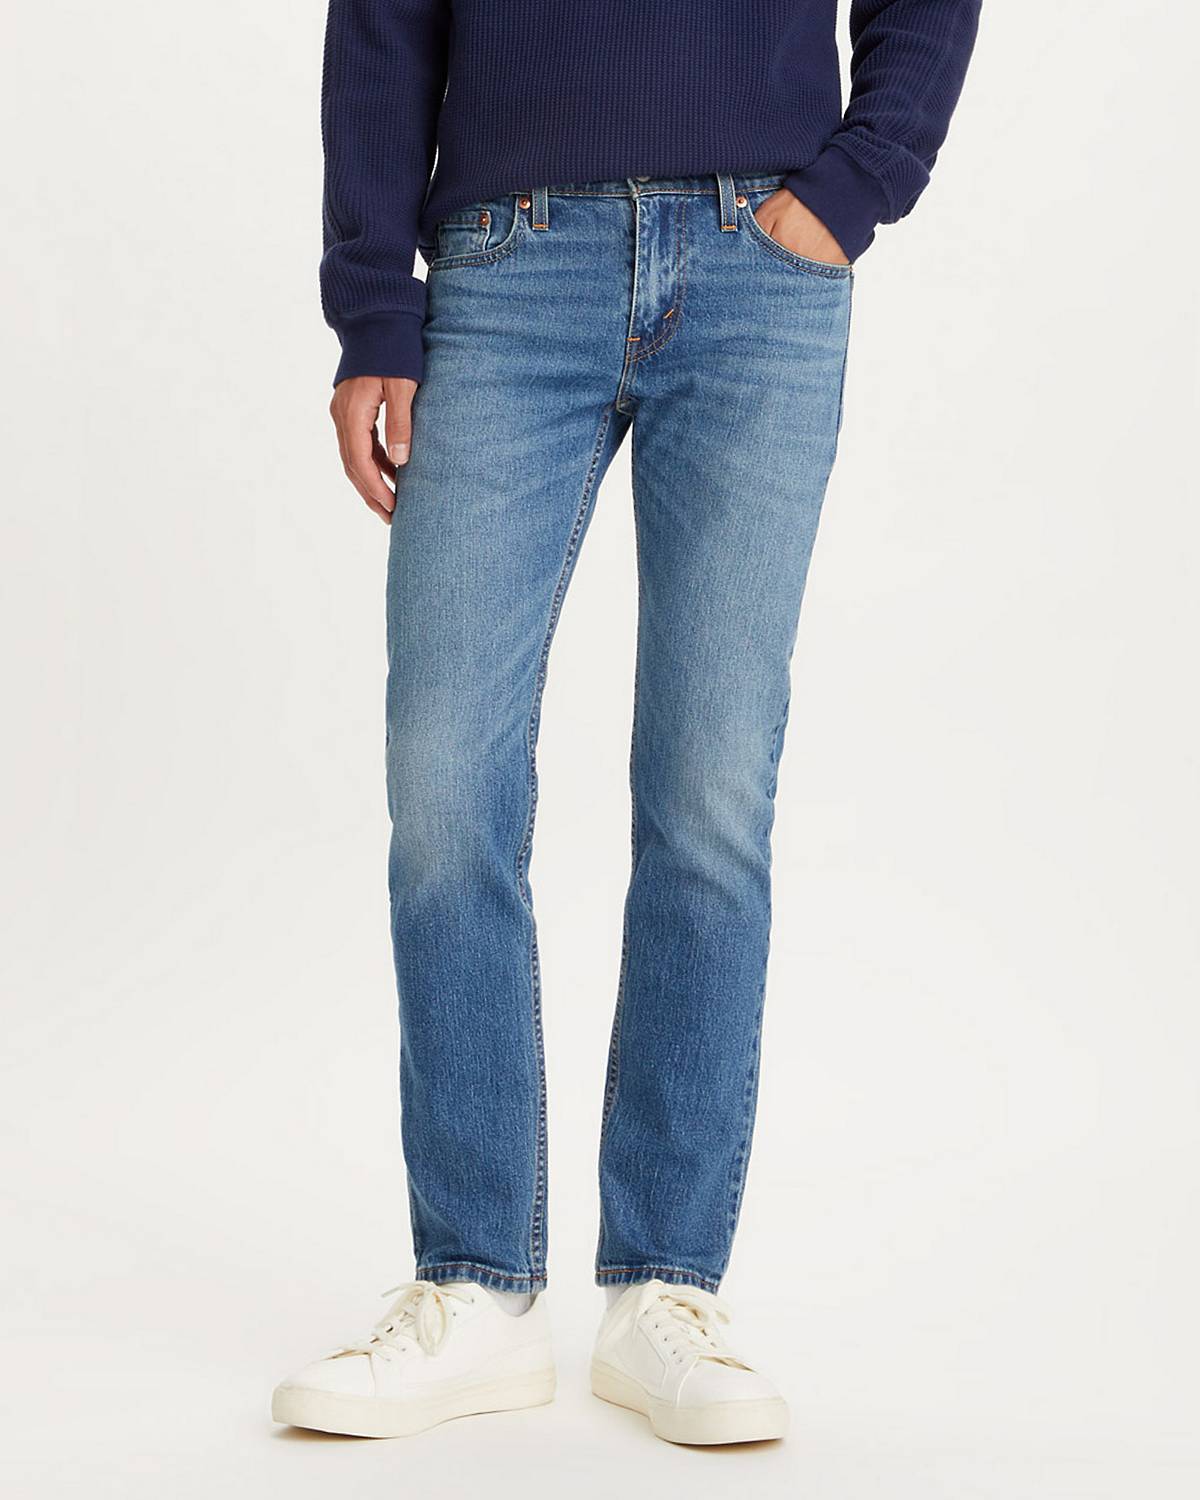 代引き手数料無料 roen jeans/men 29サイズ ヒョウ柄 スカル ジーンズ 